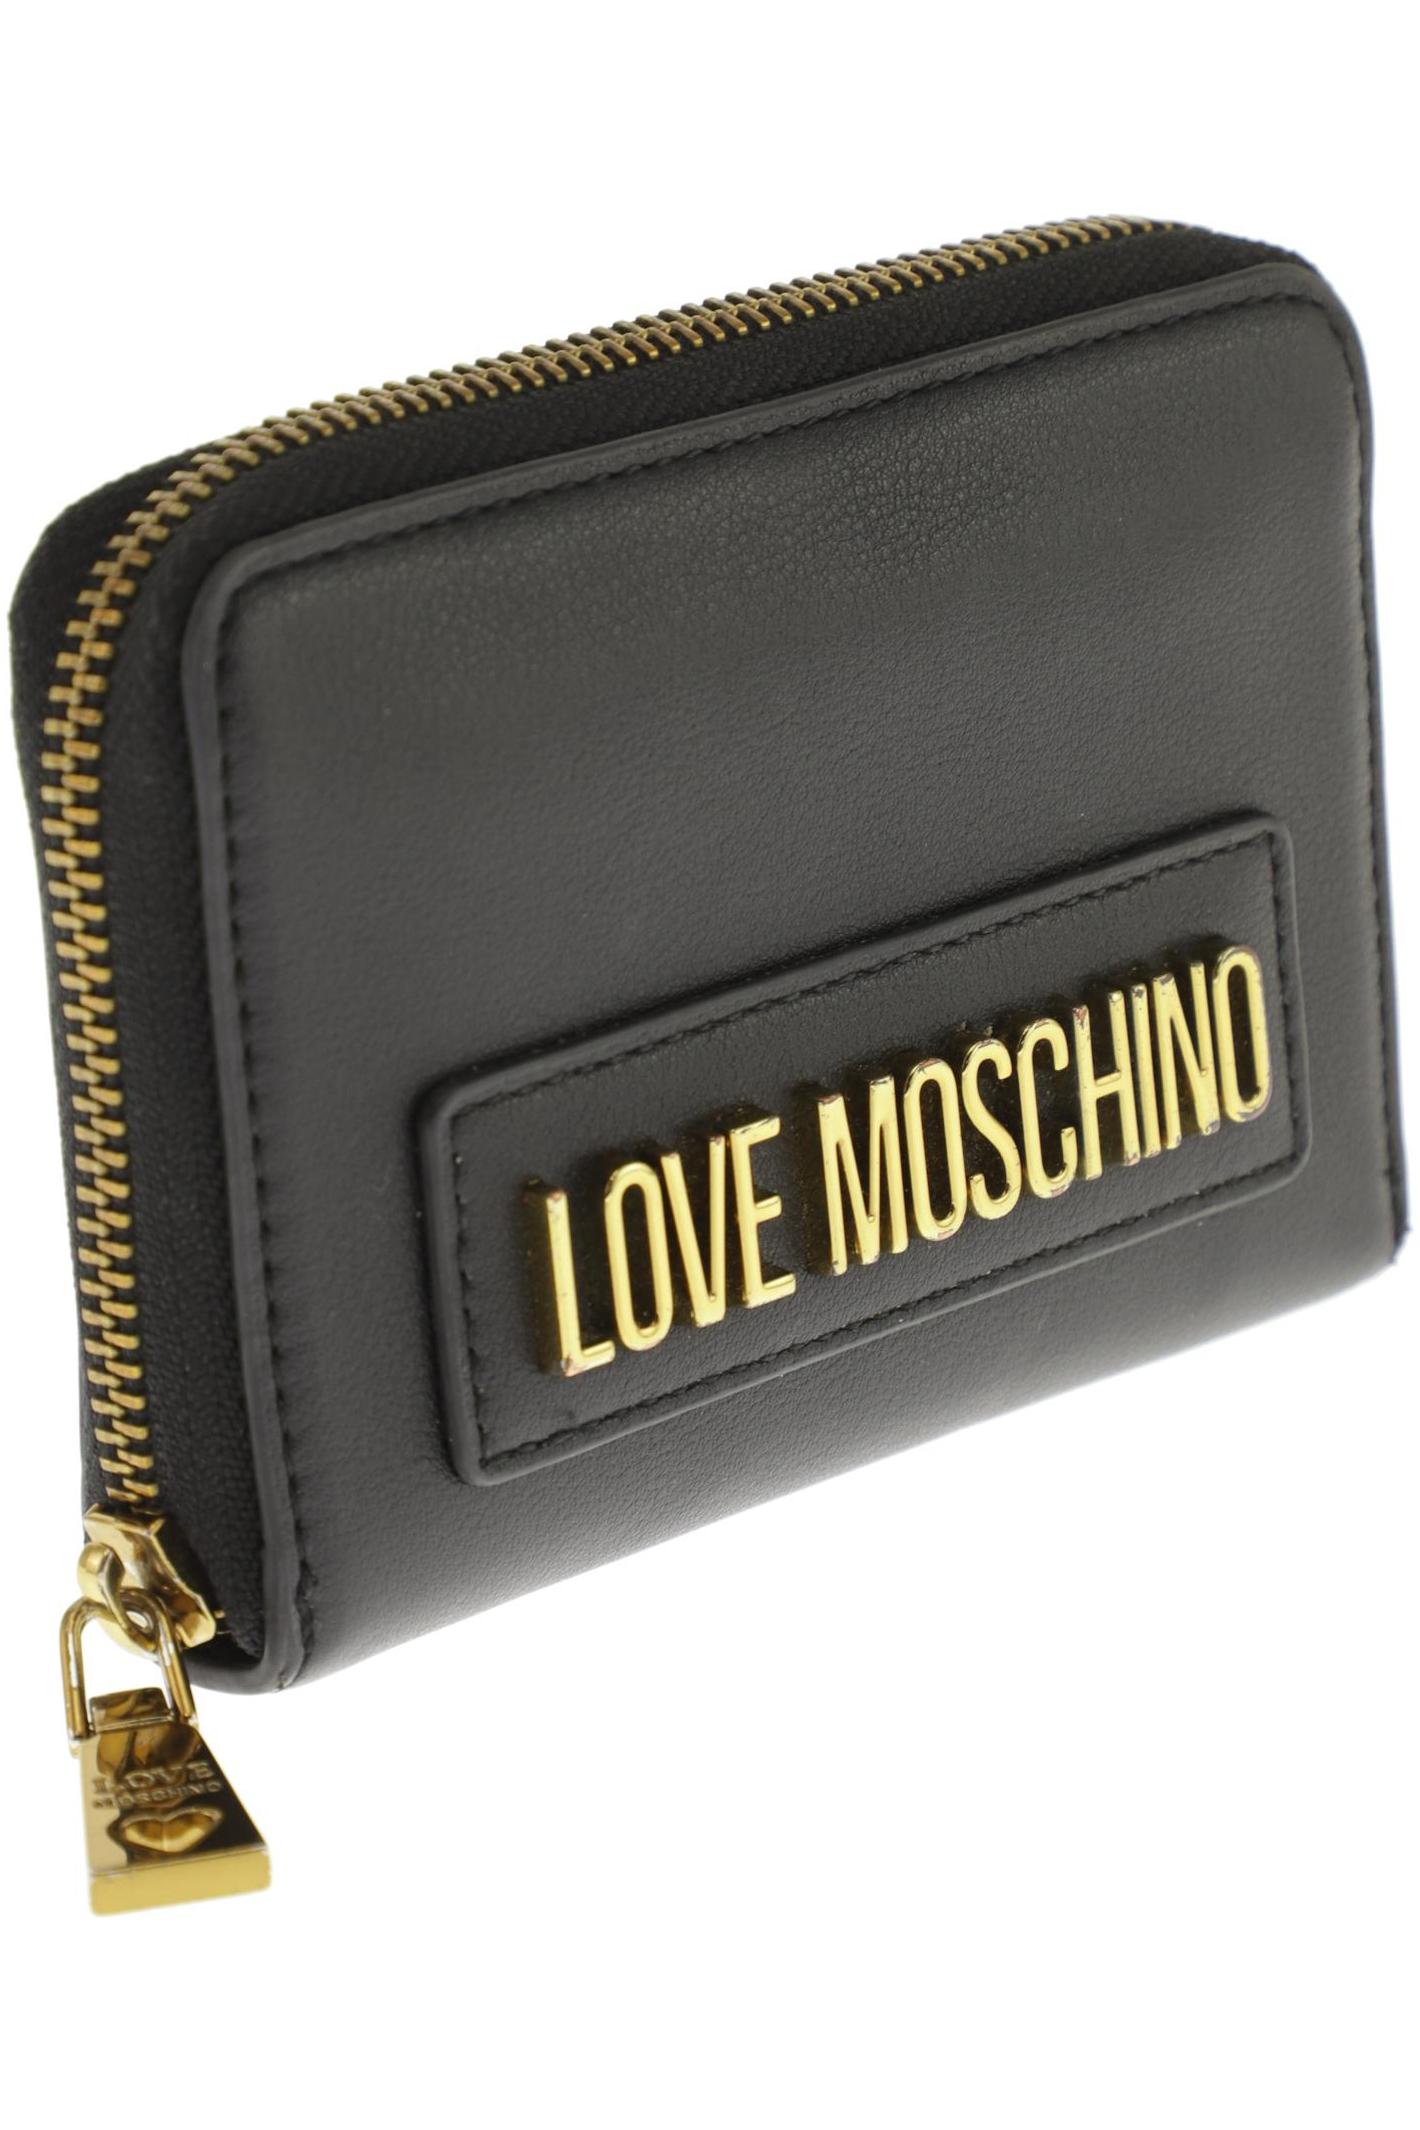 Moschino Damen Portemonnaie, schwarz von Moschino